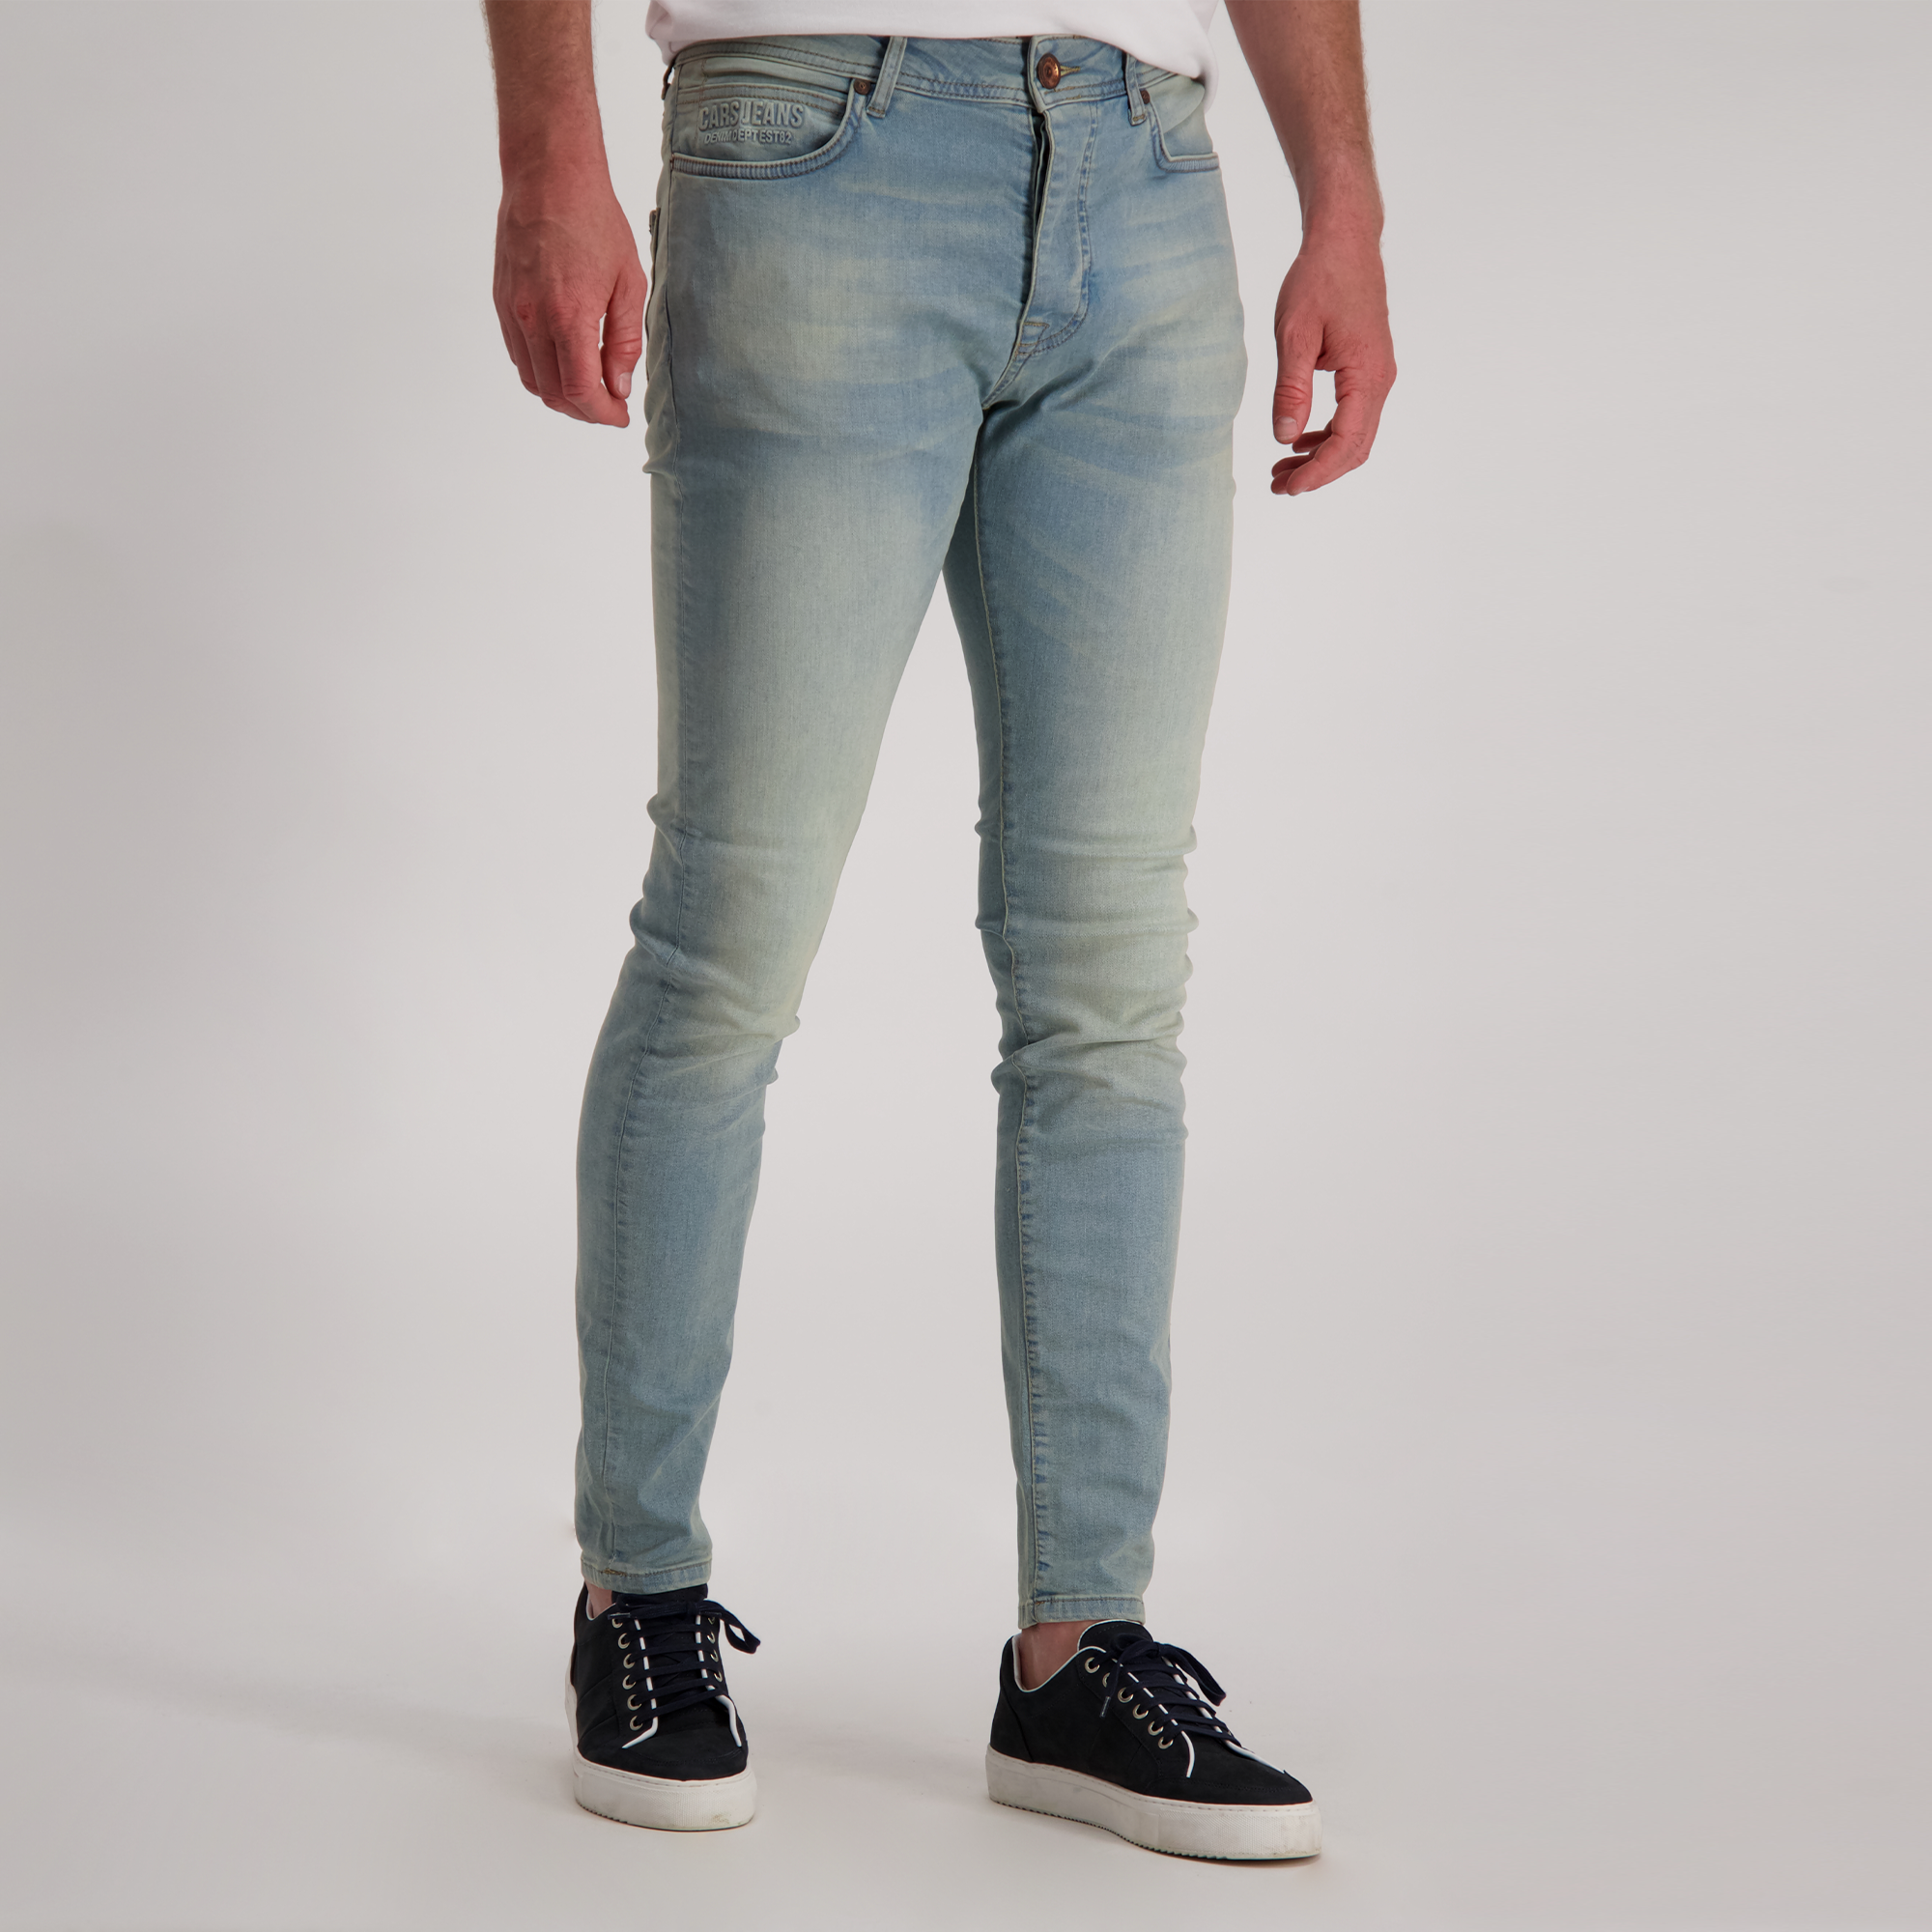 Oorzaak Alfabetische volgorde Barry Cars Jeans Dust Den Super Skinny Stw Used - Bestellen Sie Jetz Online 